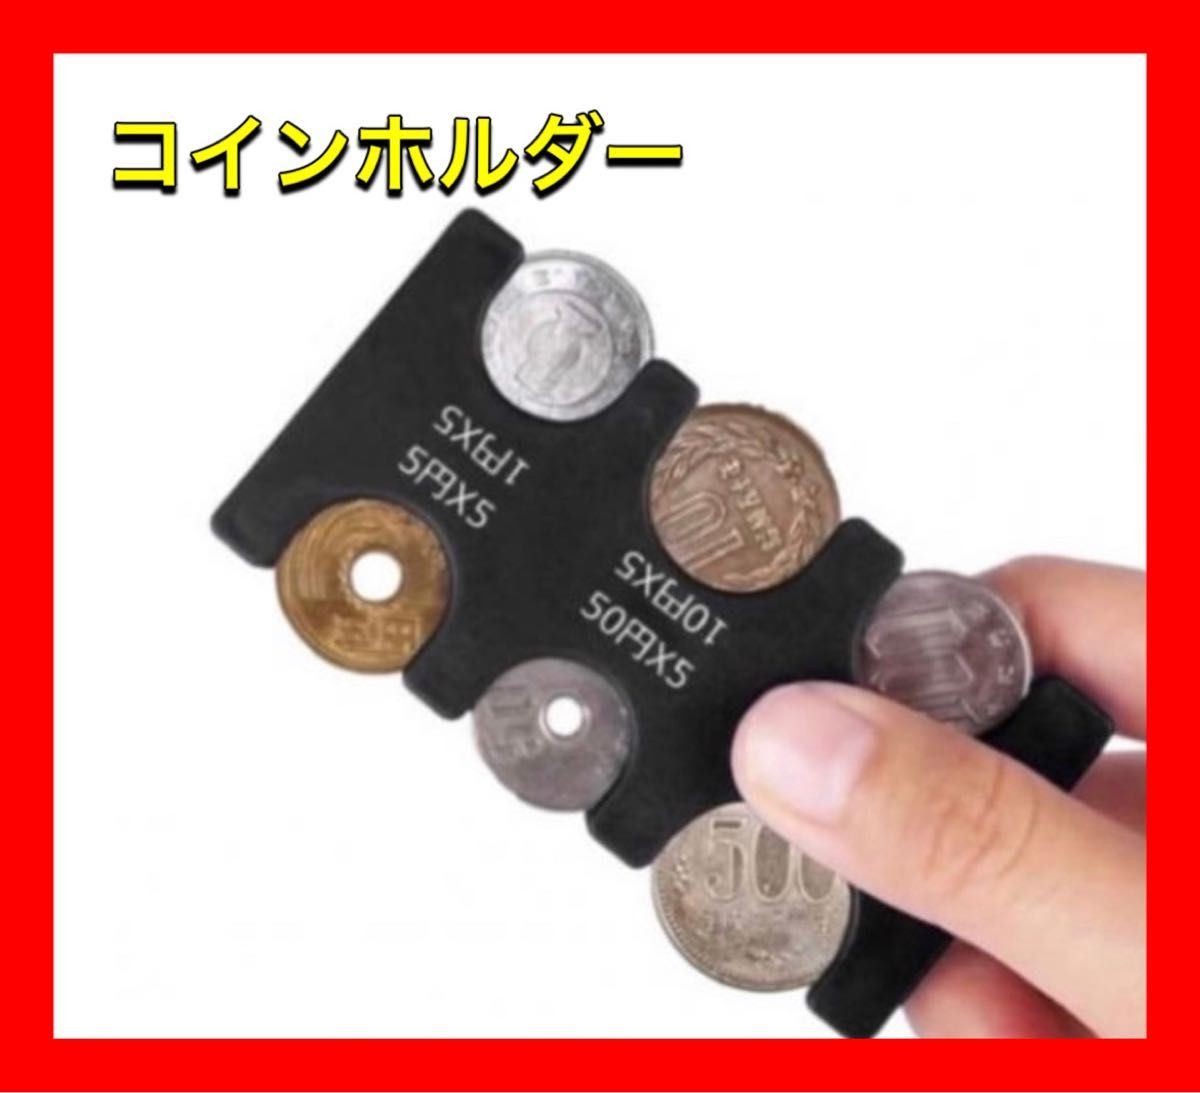 コインホルダー 小銭 財布 コイン収納 軽量 コインケース コンパクト 黒 コインホルダー 財布 コイン収納 コインケース